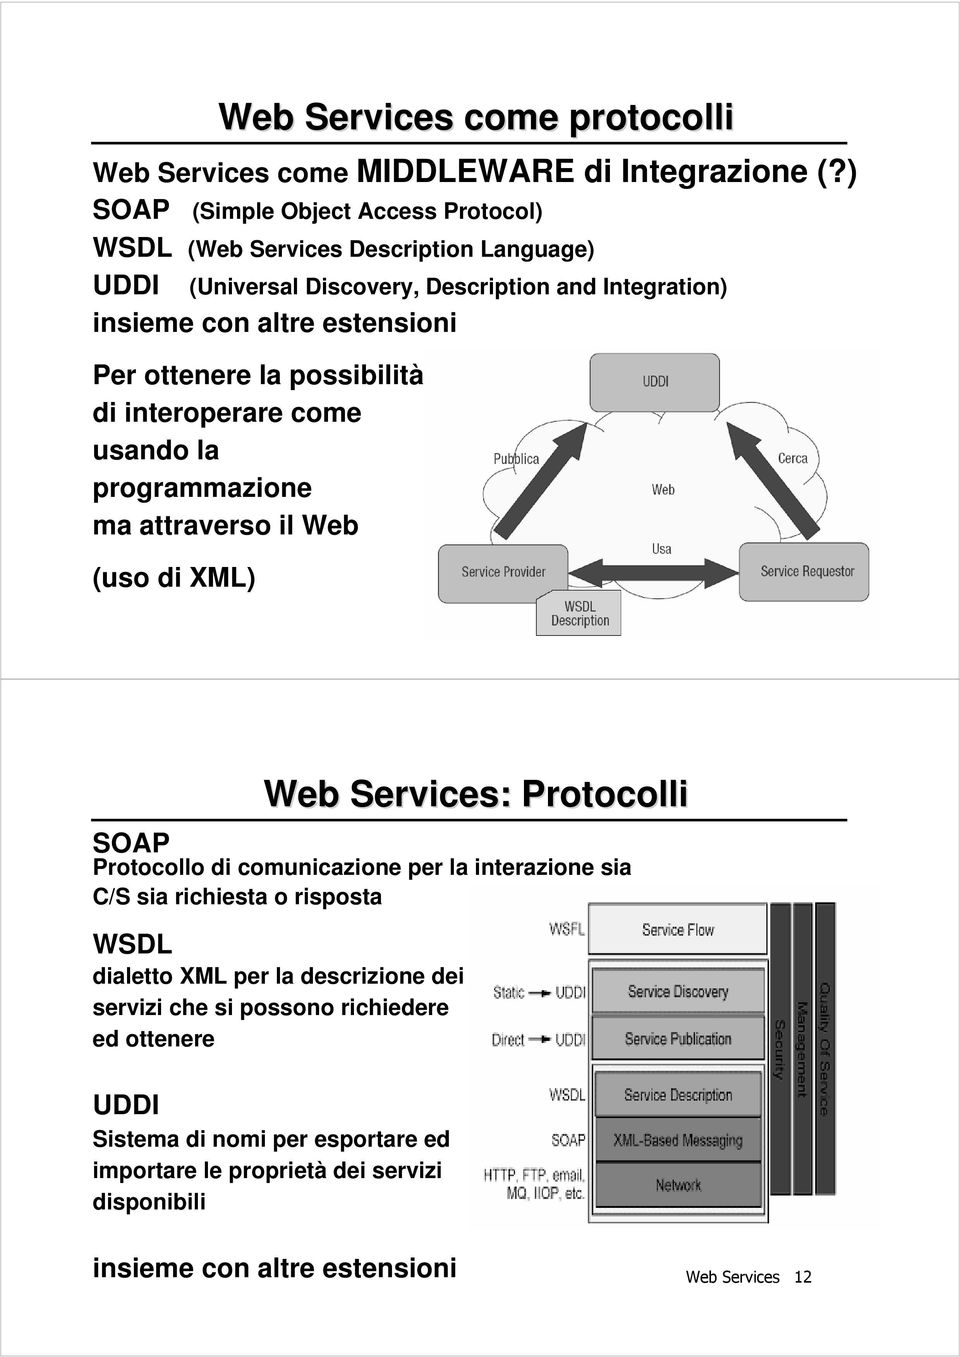 Description and Integration) Per ottenere la possibilità di interoperare come usando la programmazione ma attraverso il Web (uso di XML) Web Services 11 Web Services: